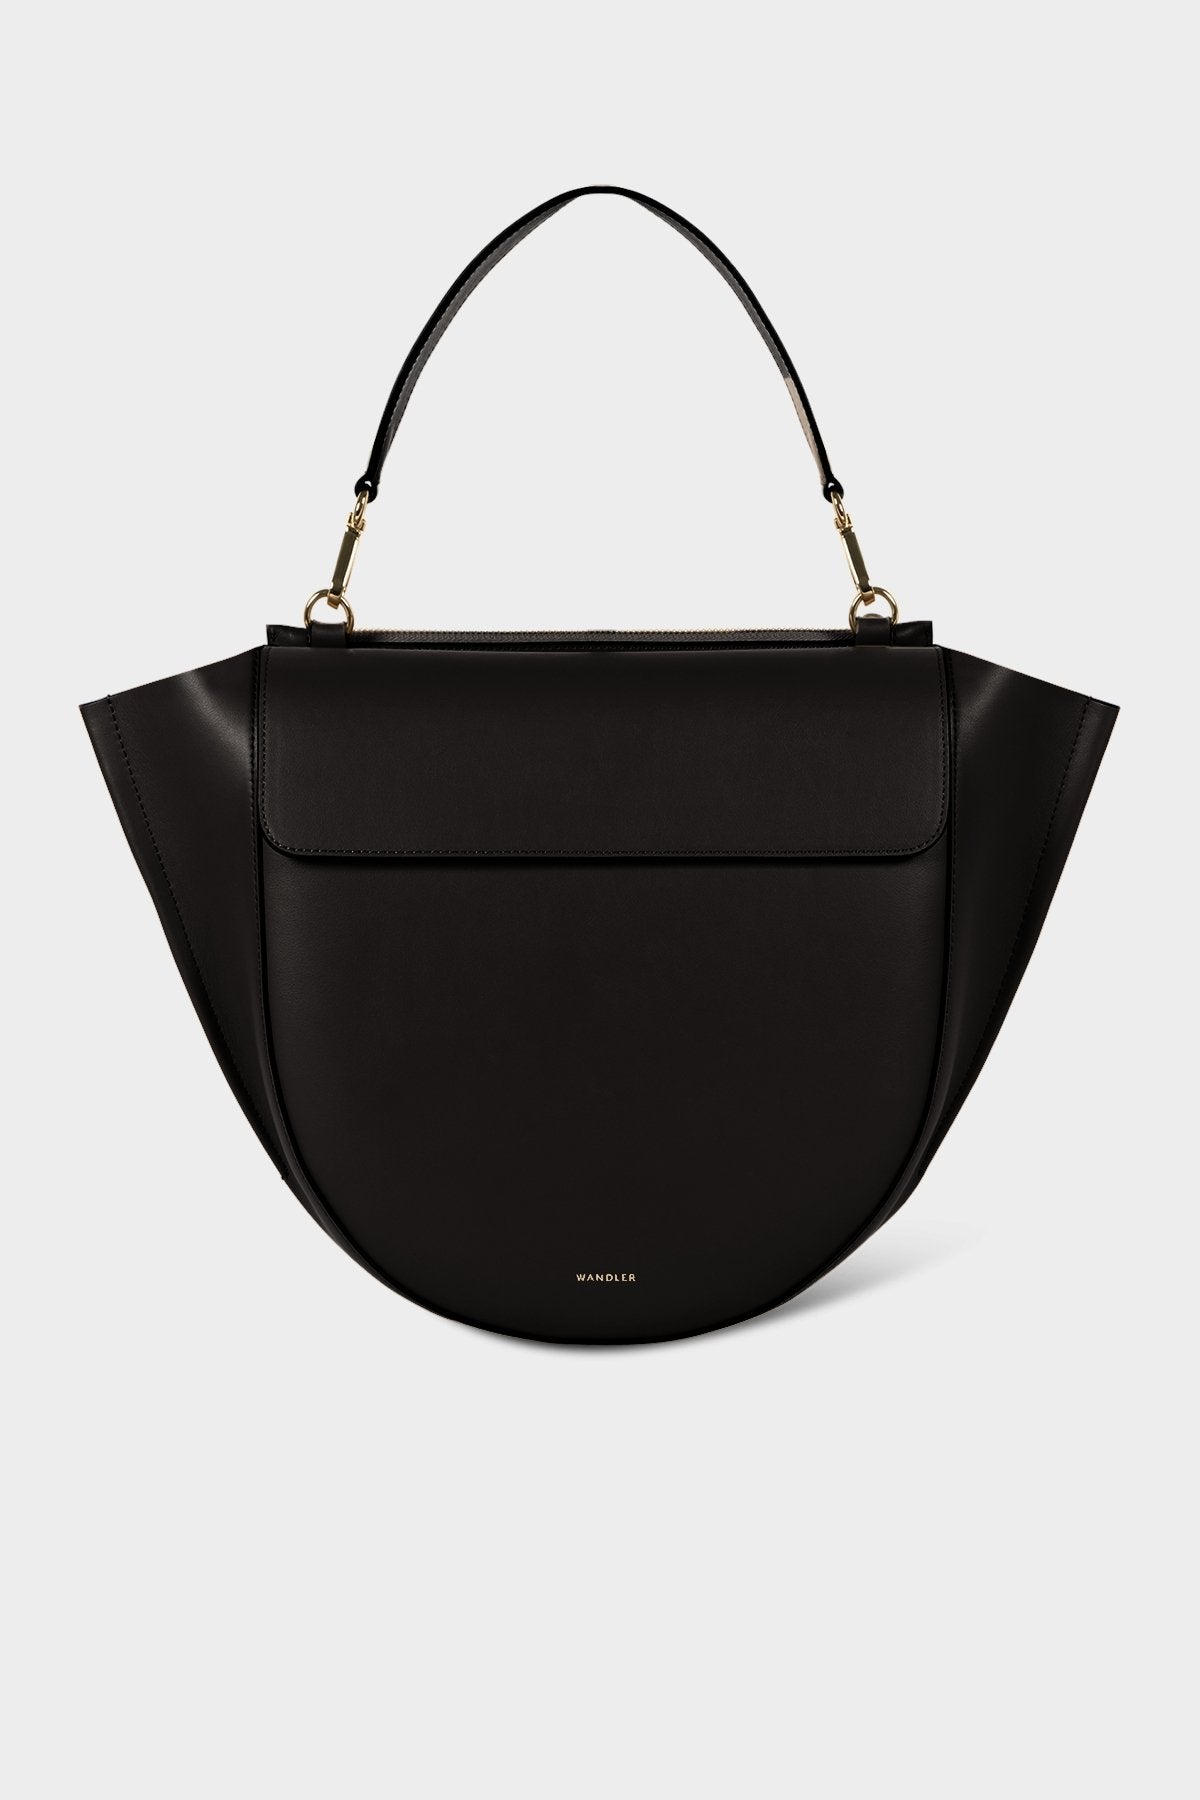 Hortensia Big Bag in Black - shop-olivia.com